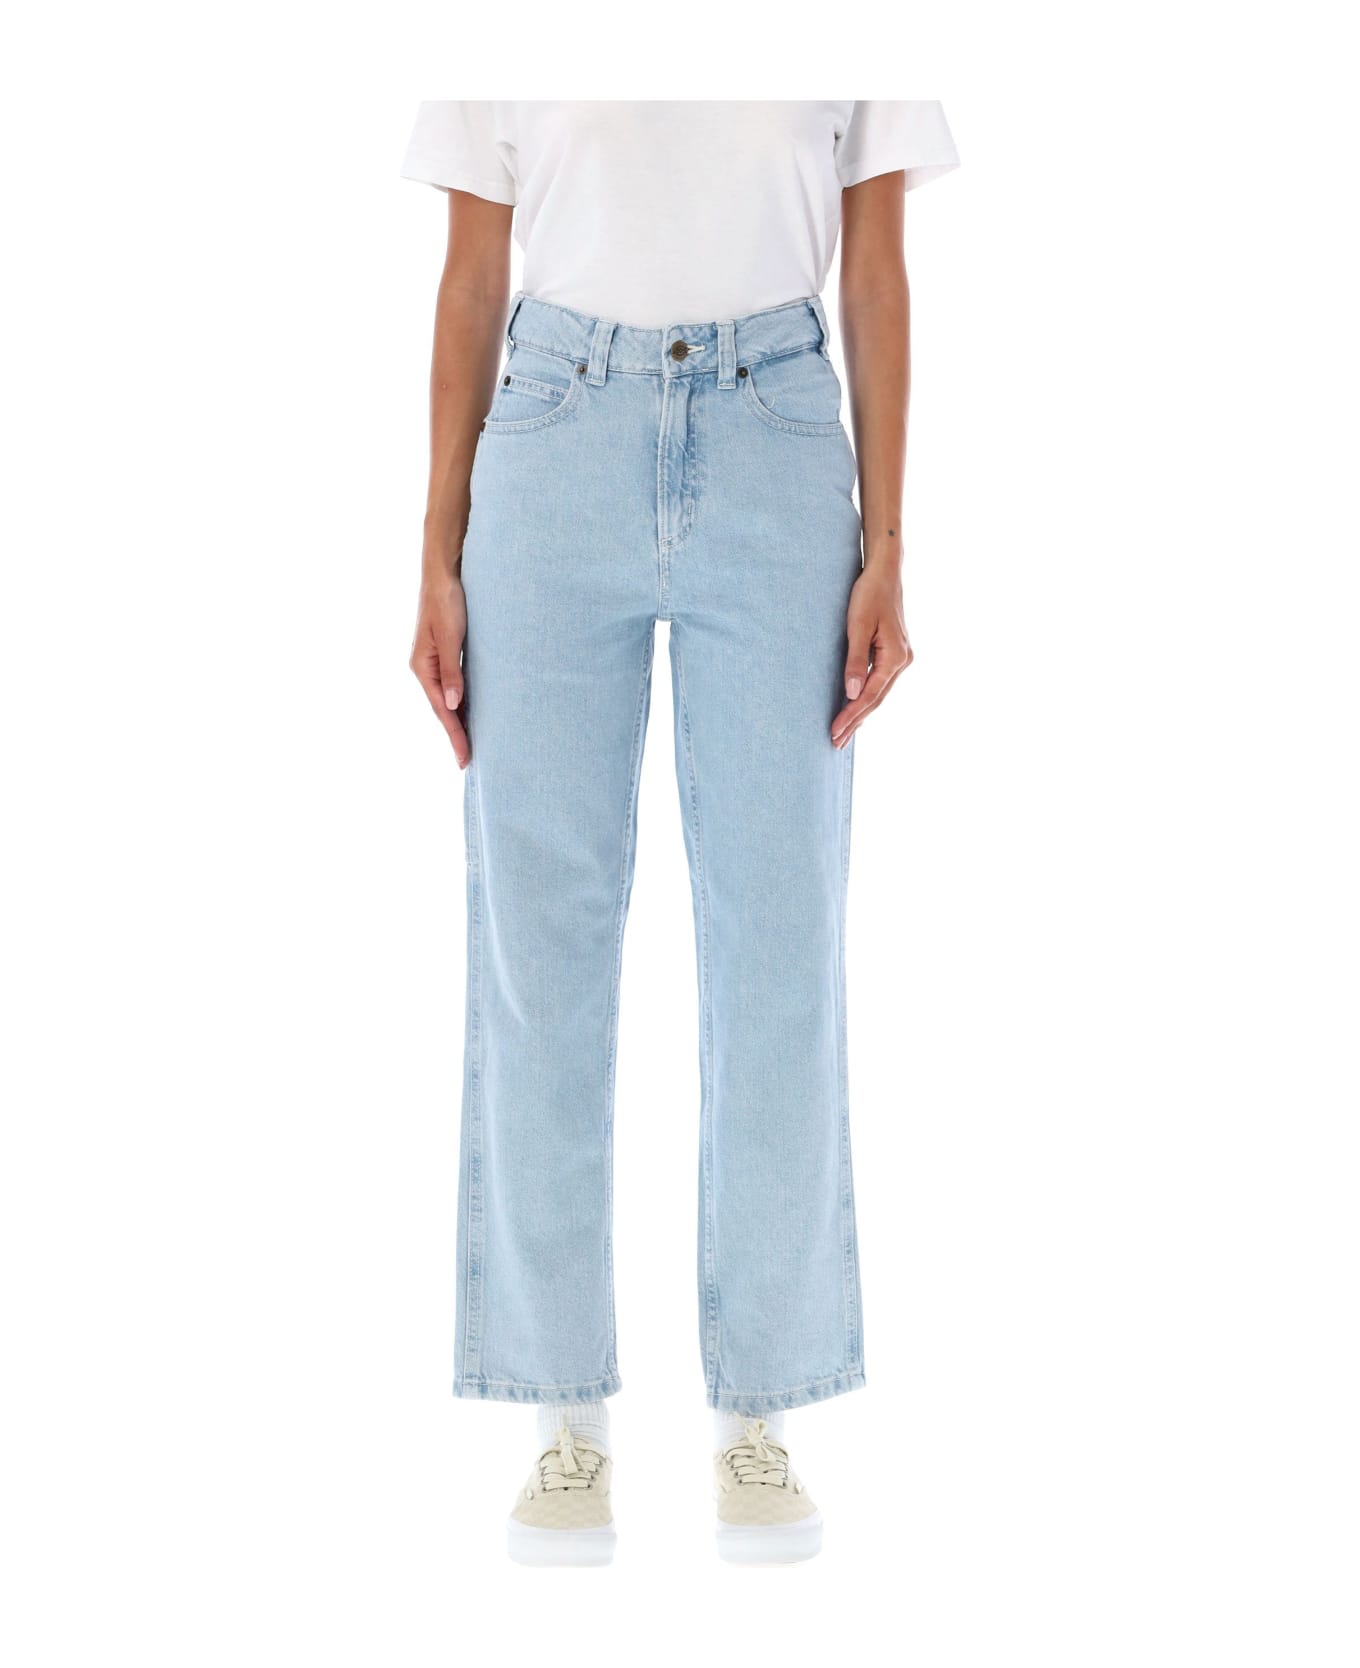 Dickies Ellendale Denim Jeans - VINTAGE AGED BLUE